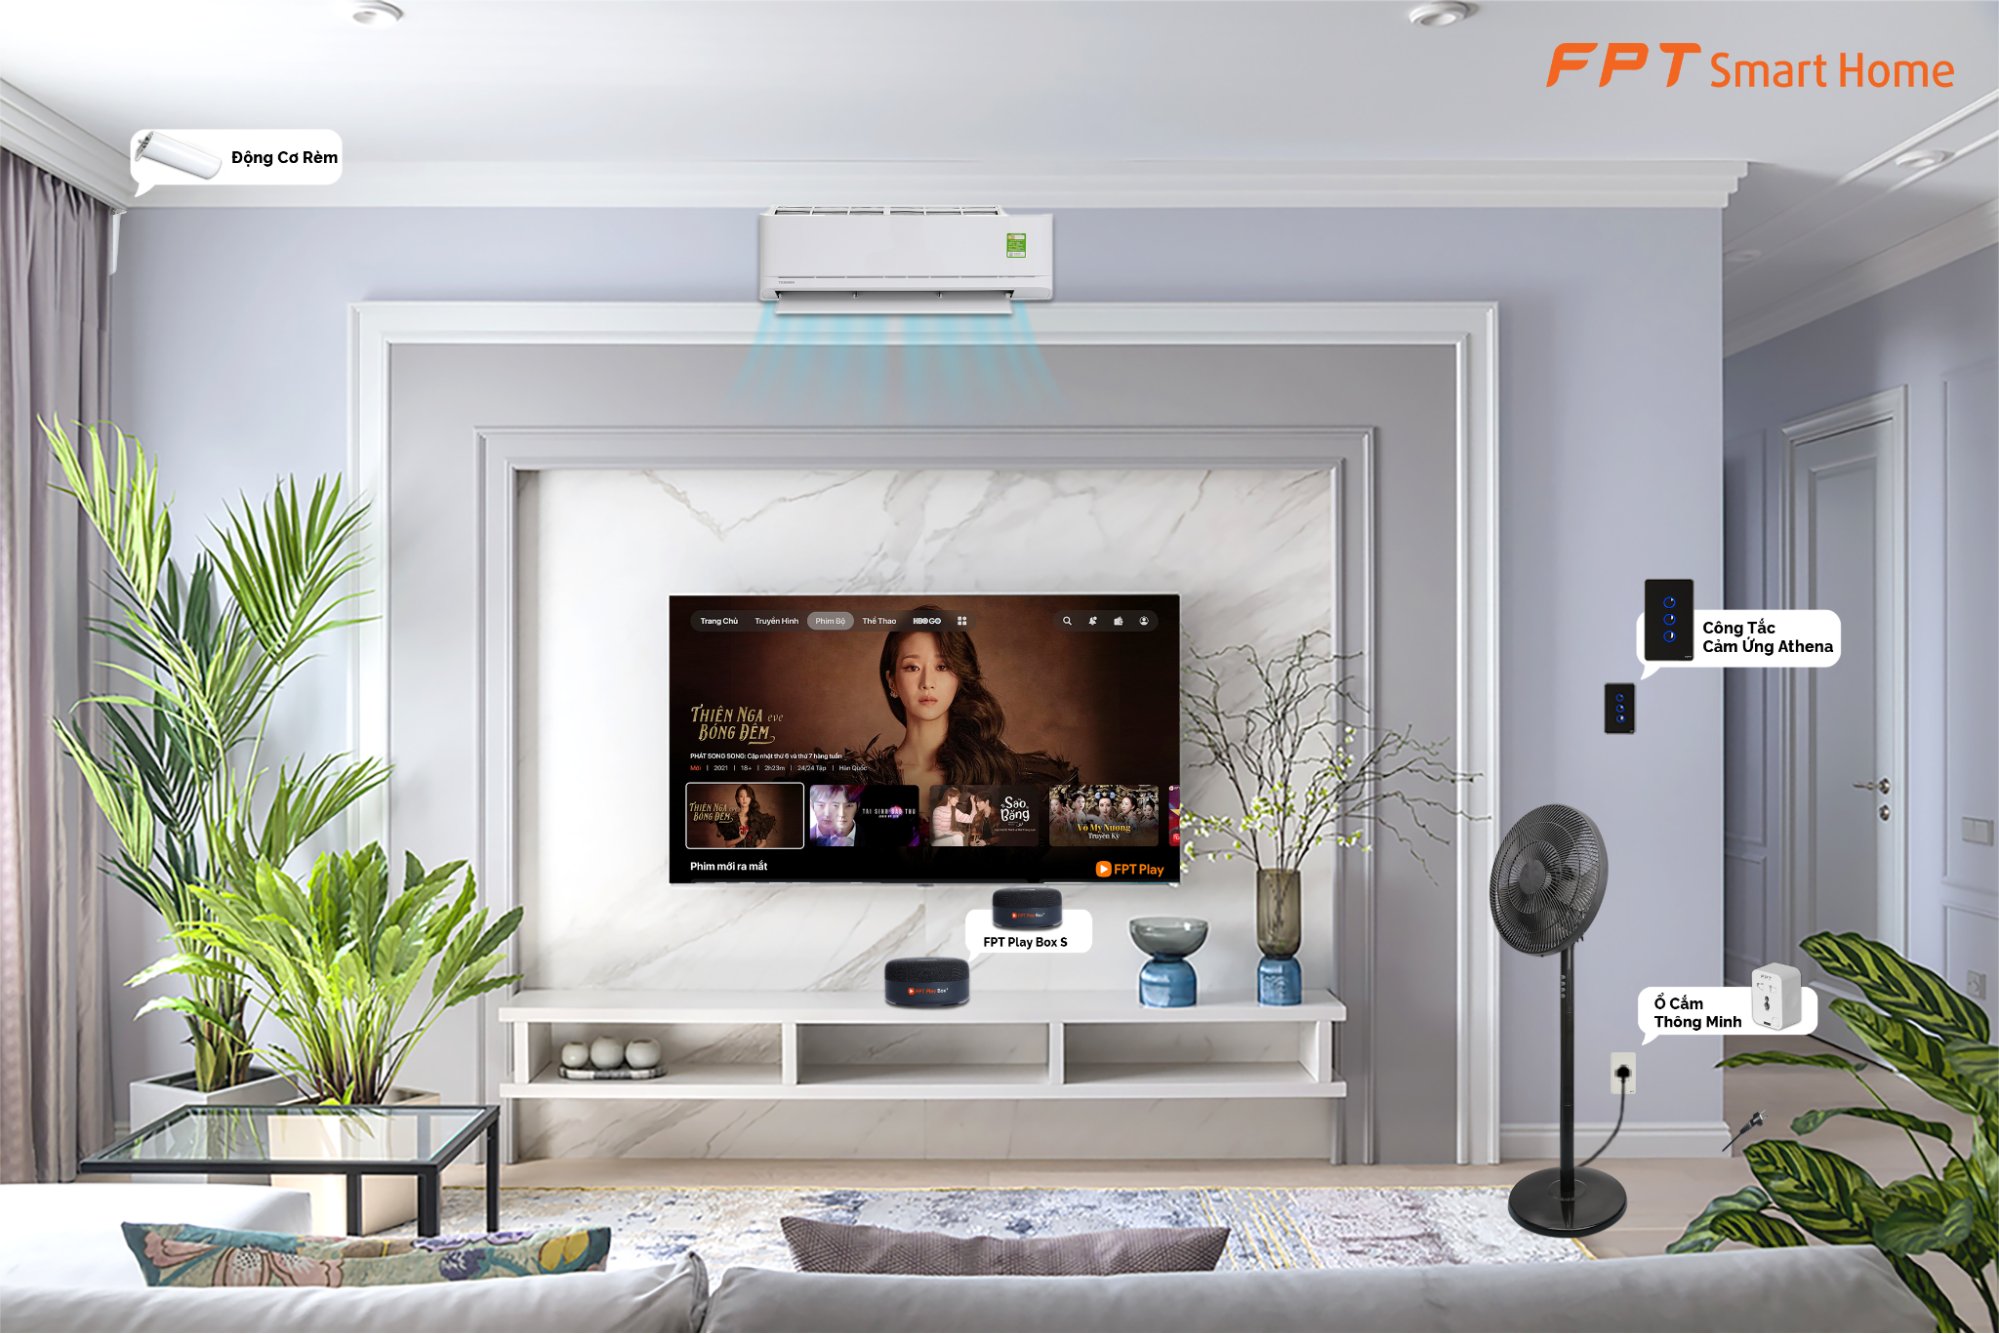 5 Thiết bị cần thiết cho nhà thông minh giá rẻ - FPT Smart Home